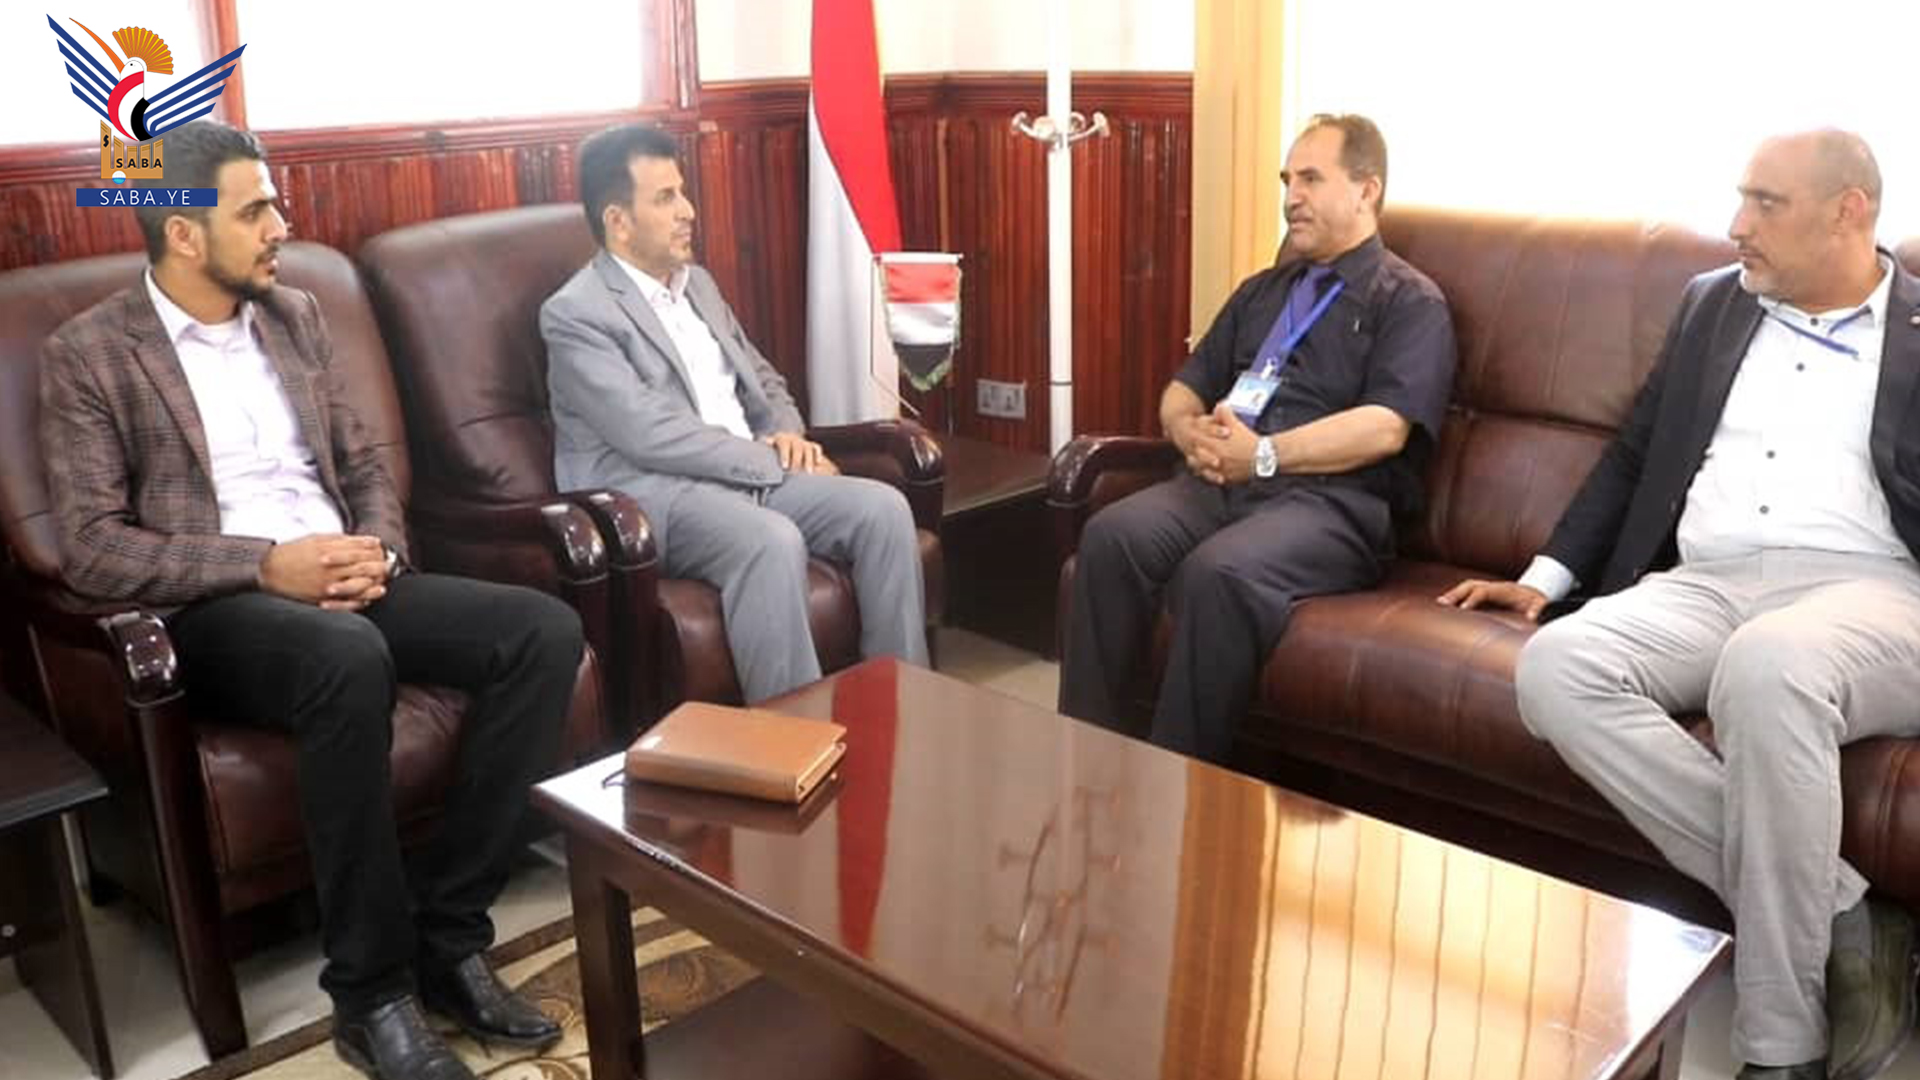 Gesundheitsminister überprüft den medizinischen Ausbildungsprozess an der Jebla-Universität